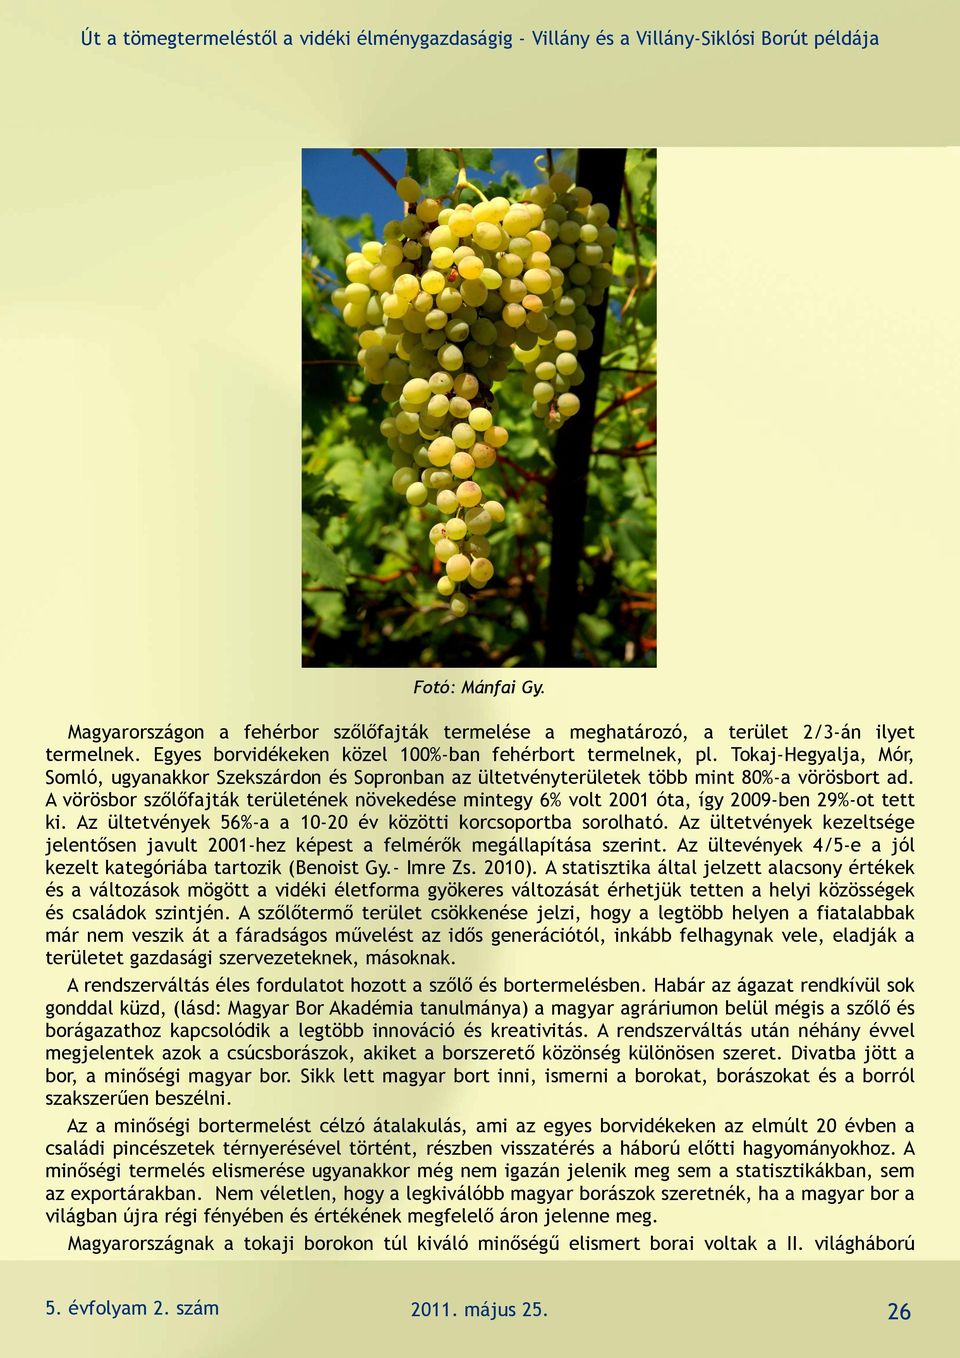 A vörösbor szőlőfajták területének növekedése mintegy 6% volt 2001 óta, így 2009-ben 29%-ot tett ki. Az ültetvények 56%-a a 10-20 év közötti korcsoportba sorolható.